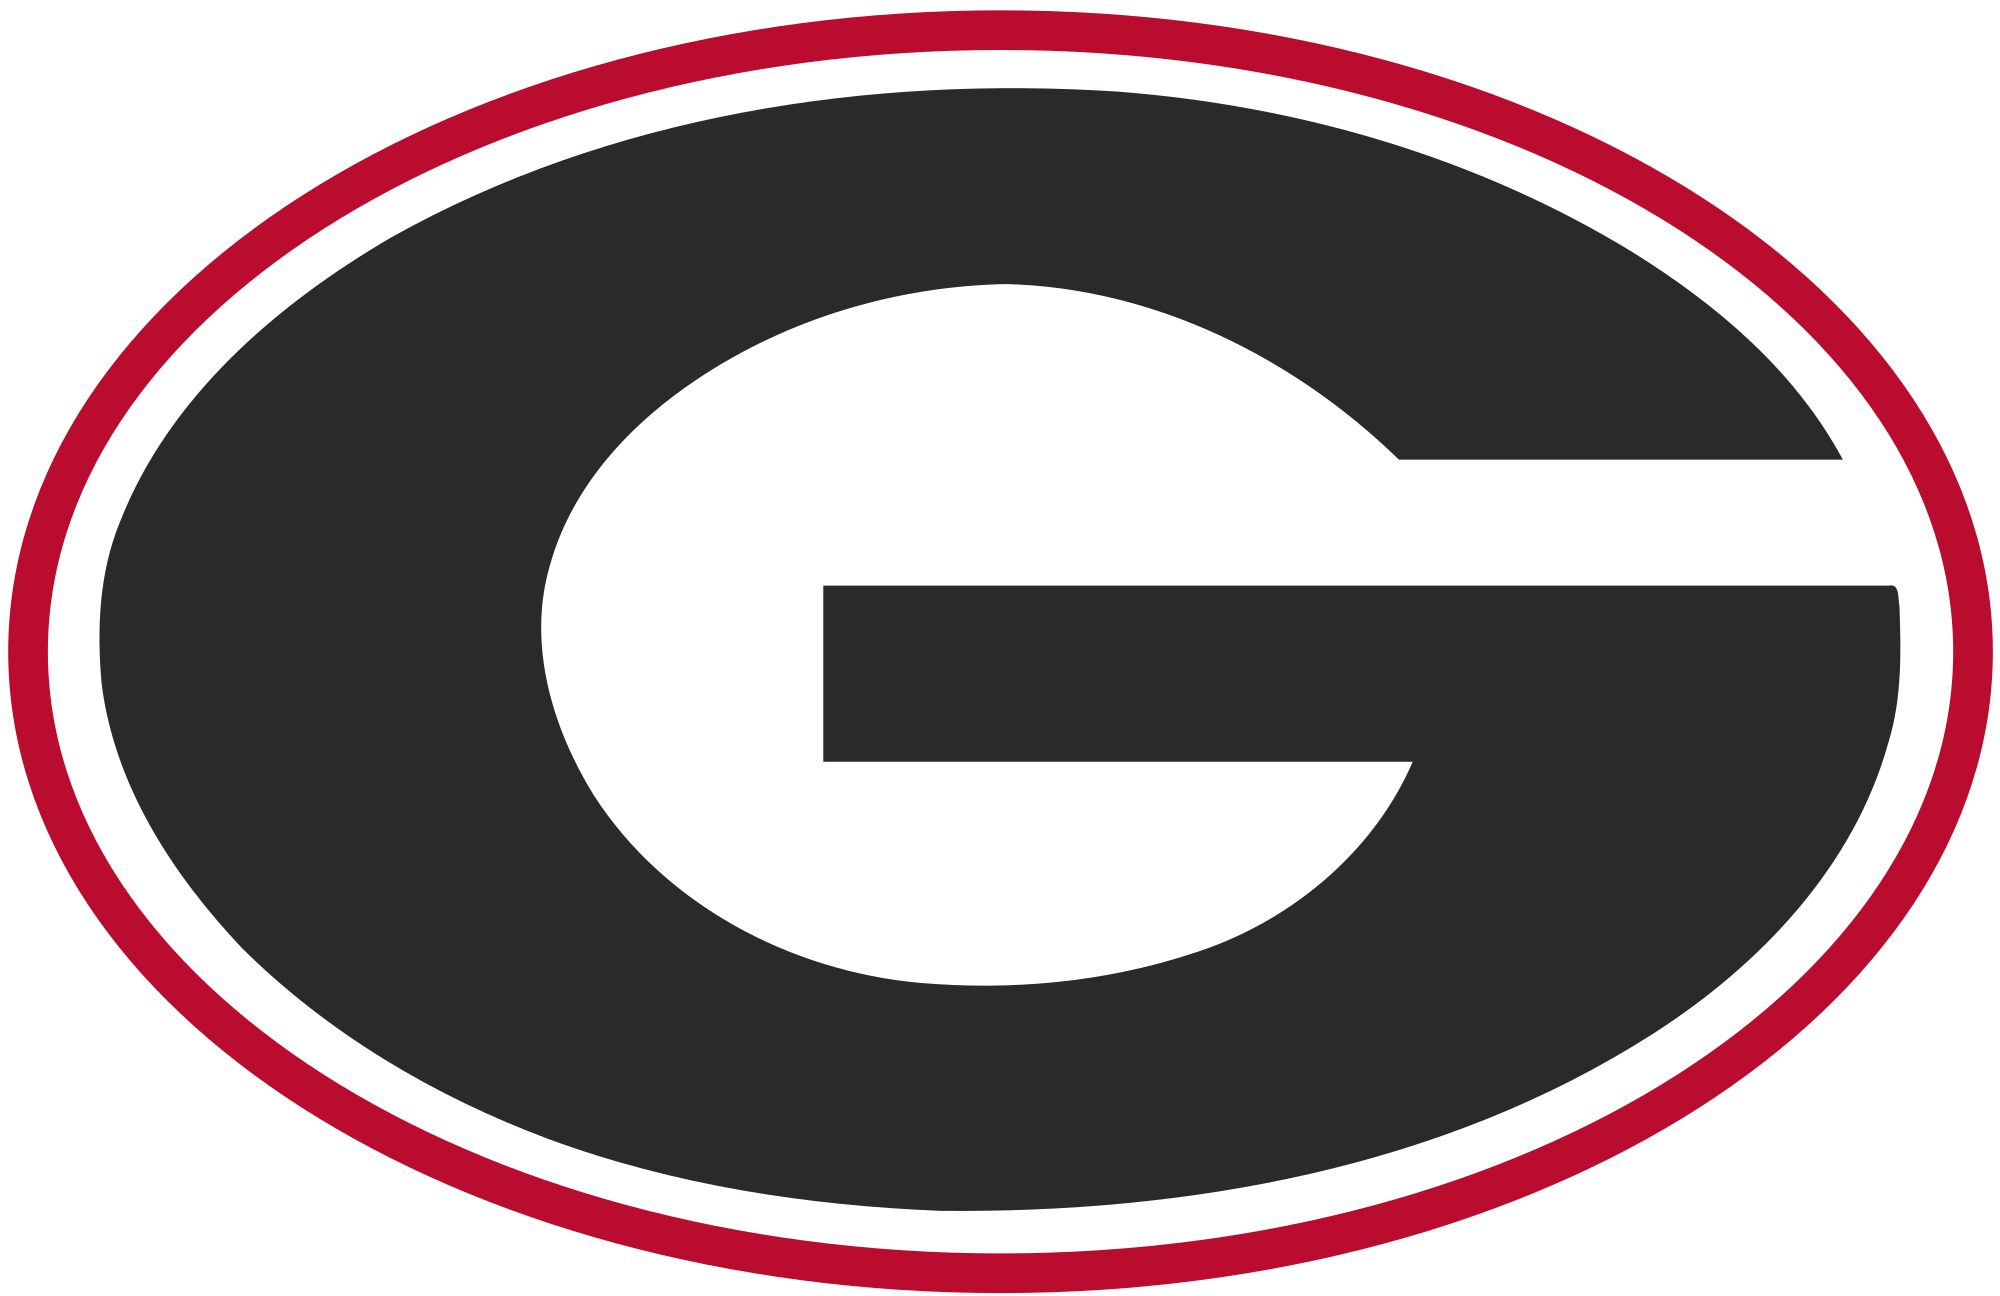 UGA G Logo - File:Georgia Athletics logo.svg - Wikimedia Commons